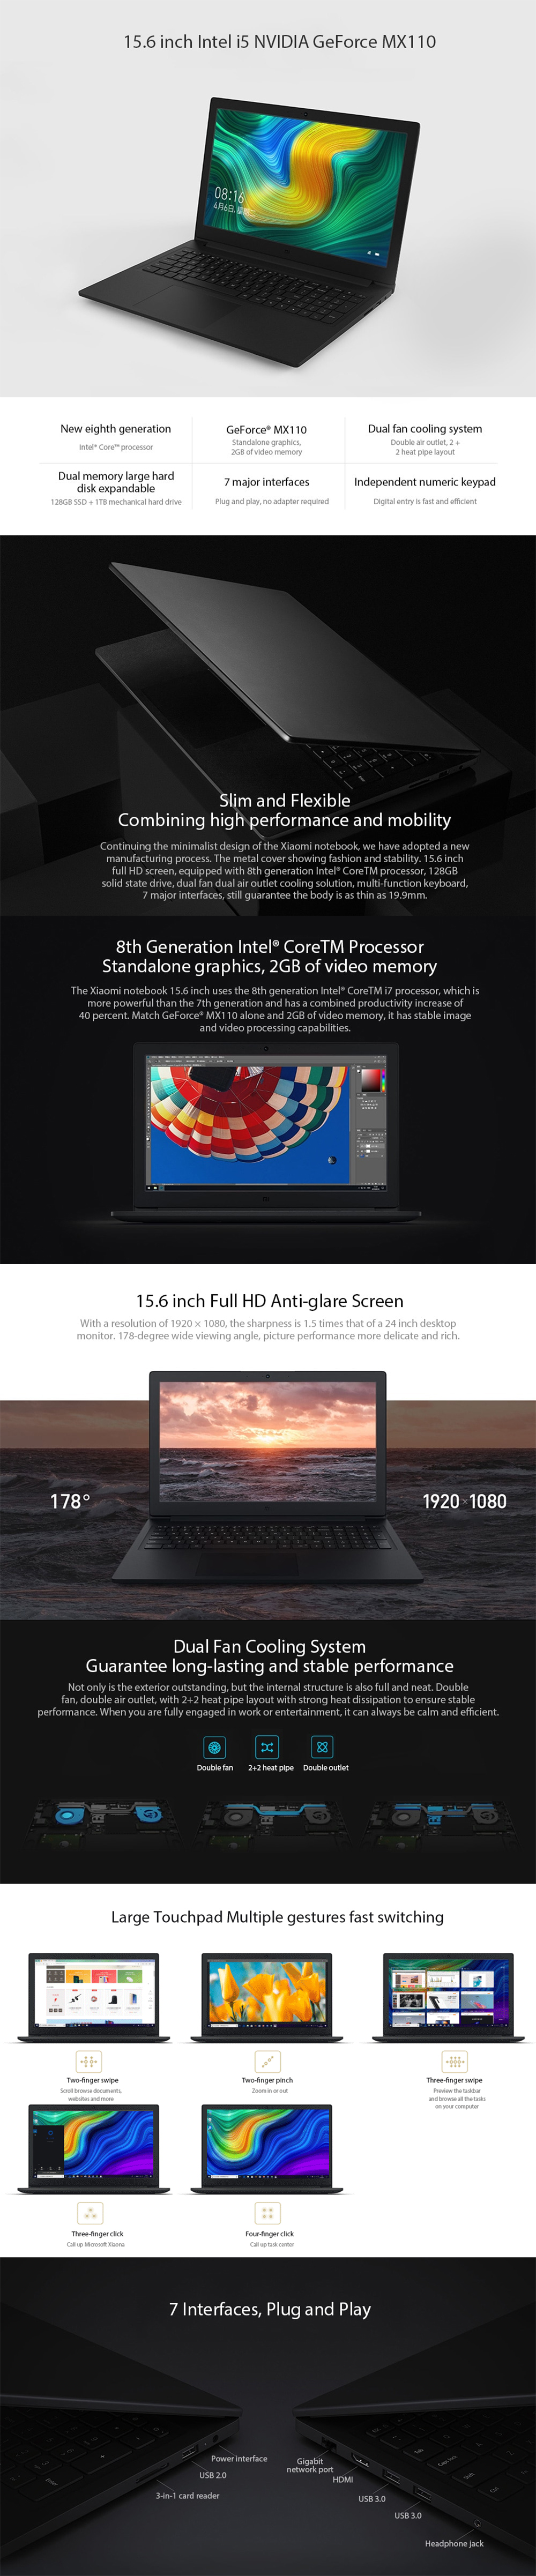 Original-Xiaomi-Mi-Laptop-156-Inch-Intel-i7-8550U-NVIDIA-GeForce-MX110-8GB-DDR4-128GB-SSD-1TB-HDD-La-1360937